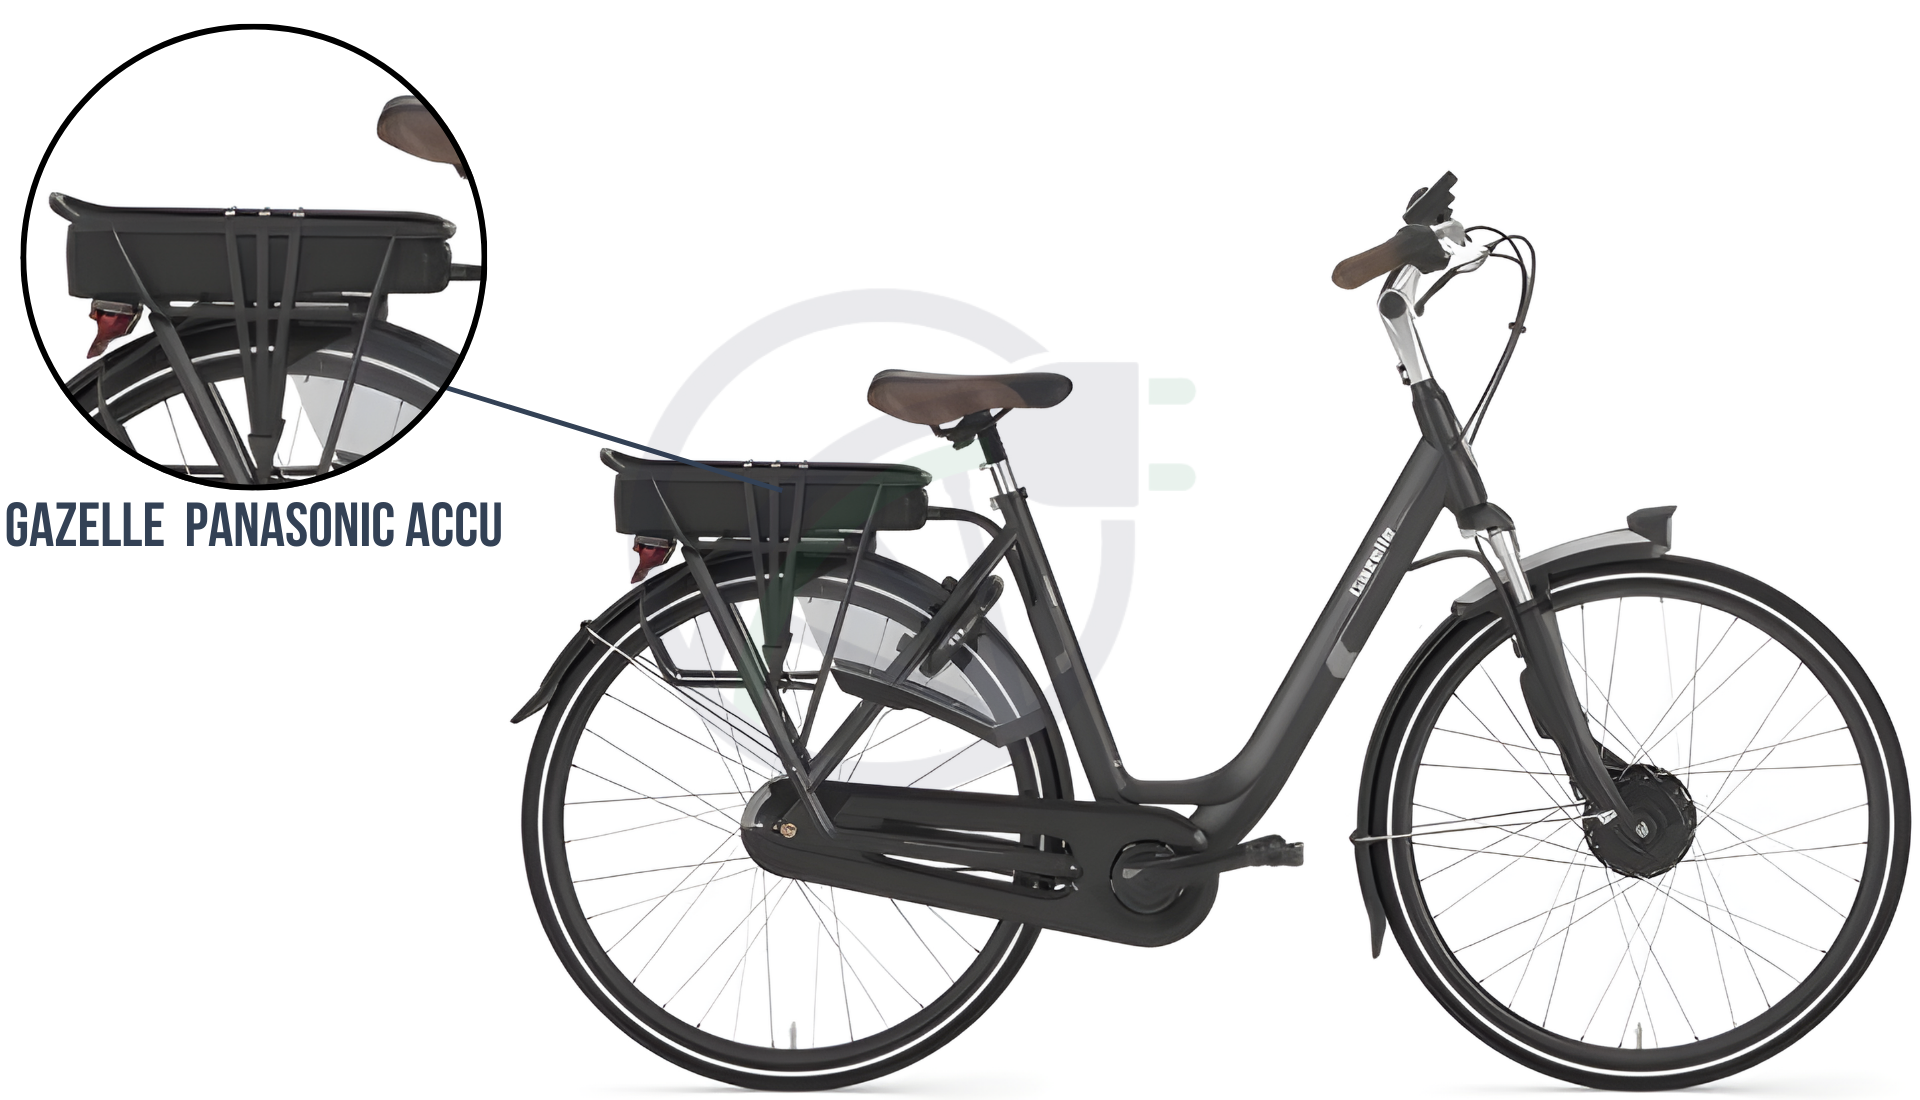 In deze afbeelding zie je een elektrische fiets van Gazelle, hierbij is uitgelicht welke accu er verwerkt zit in deze fiets. DIt is in dit geval de Gazelle Panasonic accu. Deze is beschikbaar in vier capaciteiten.